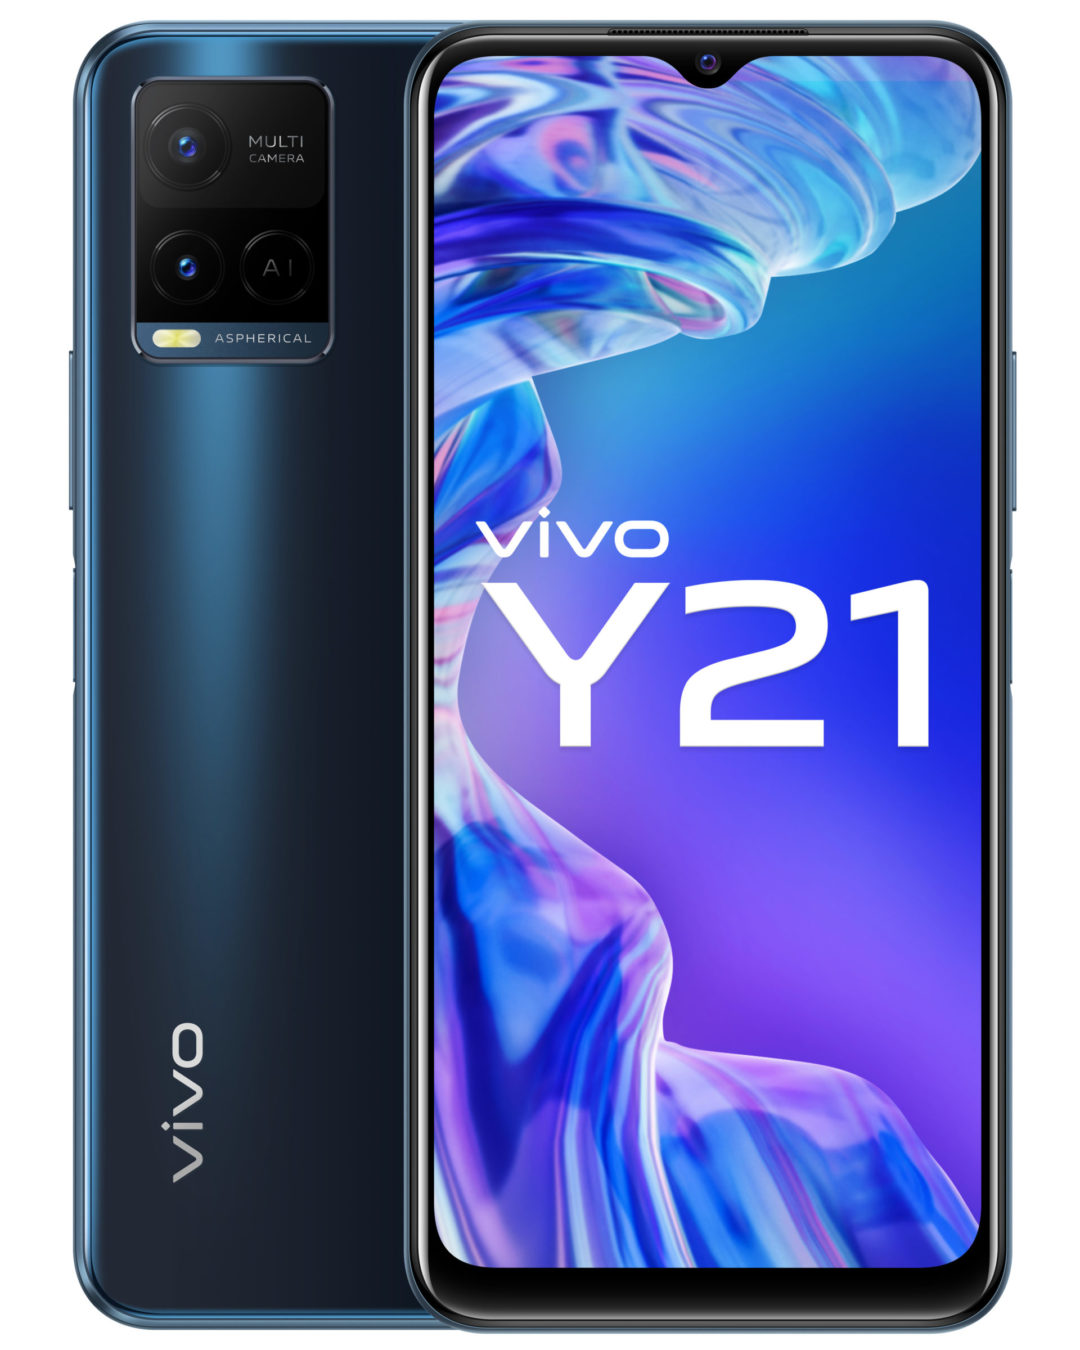 Vivo introduces Y21 with 5000mAh